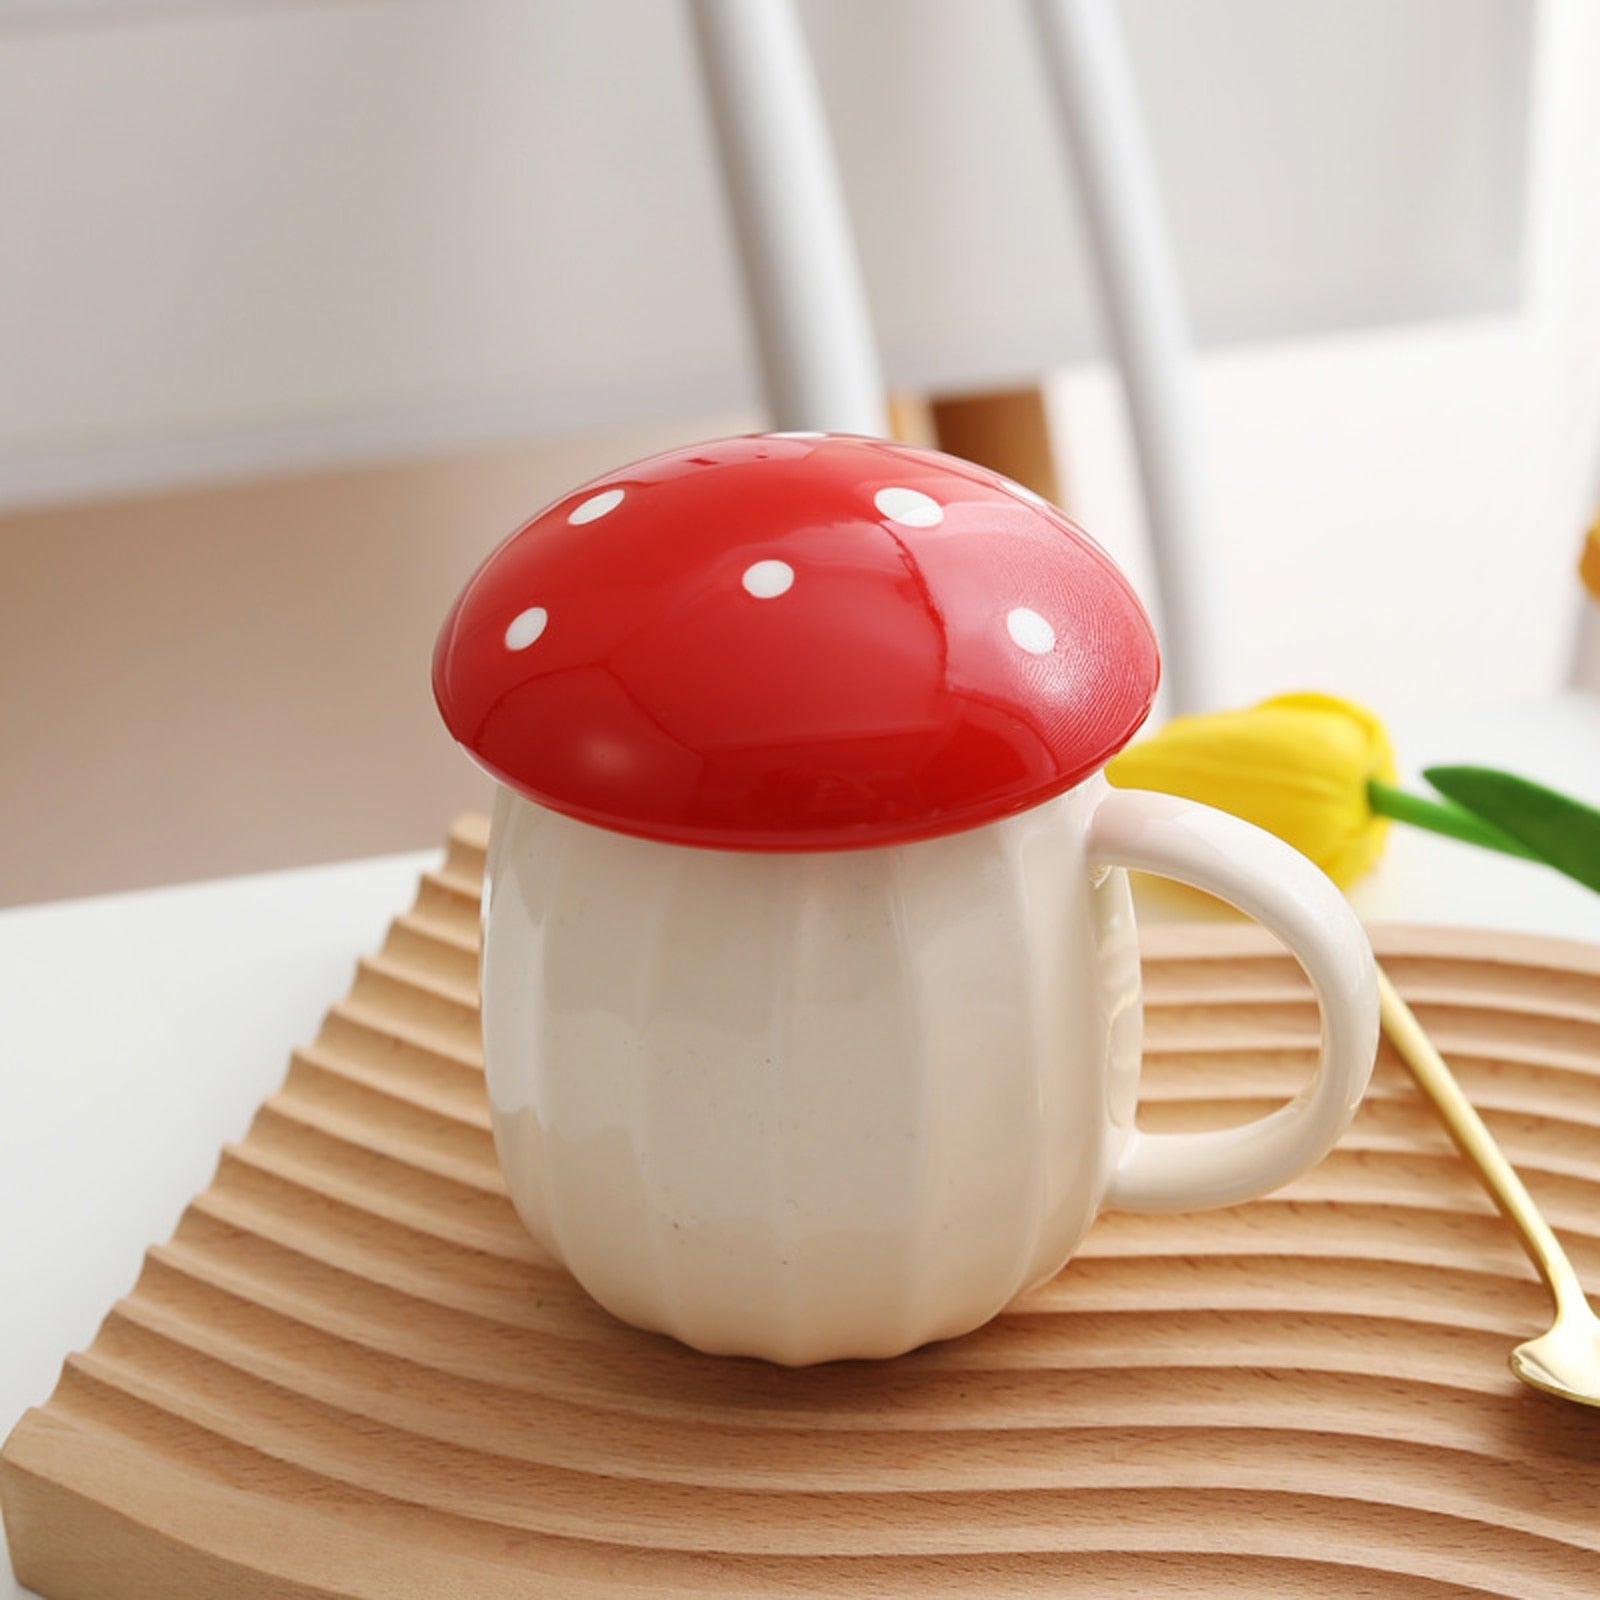 Mushroom Mug with Lid